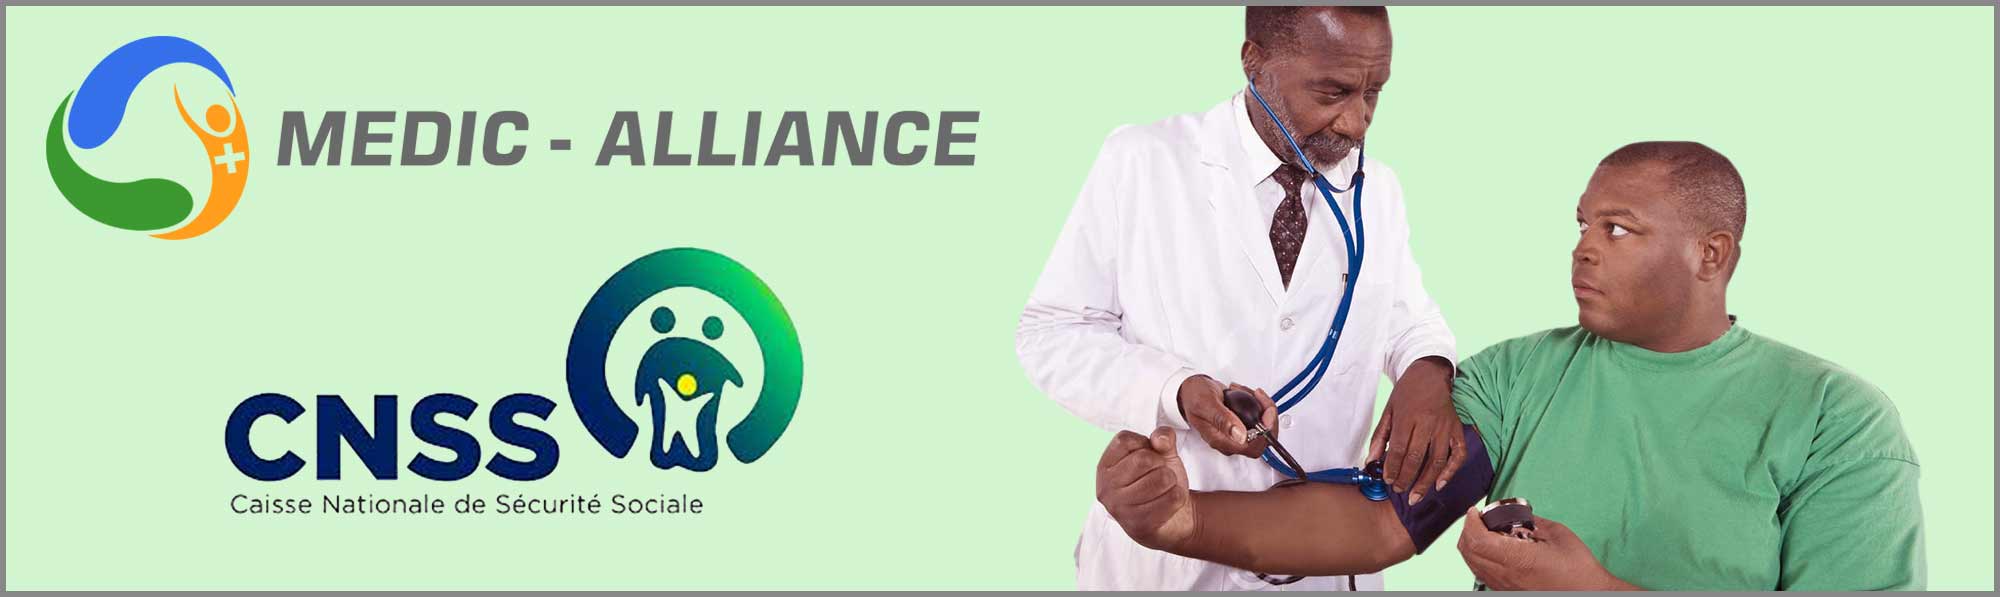 examen-d-aptitude-au-travail-medic-alliance-et-cnss-medic-alliance